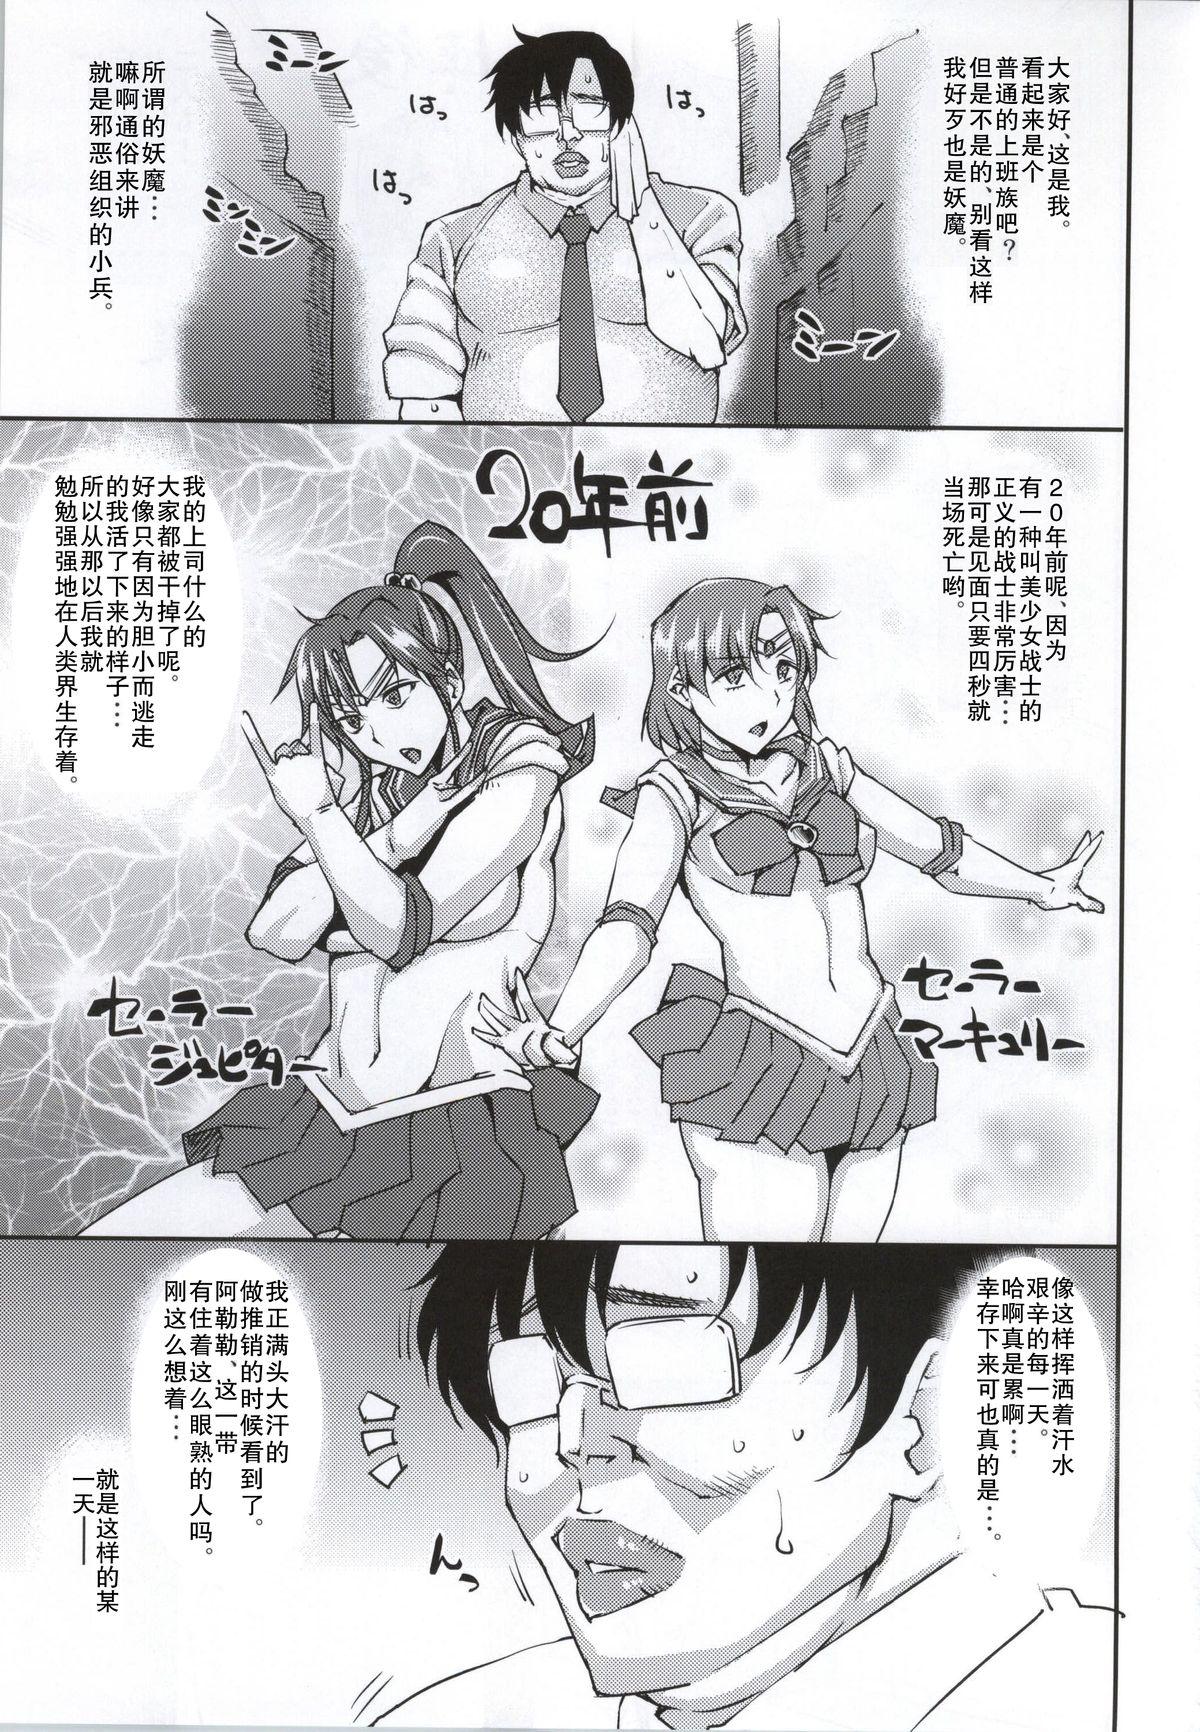 Class 20 Nengo no, Sailor Senshi o Kakyuu Youma no Ore ga Netoru. - Sailor moon Grosso - Page 2